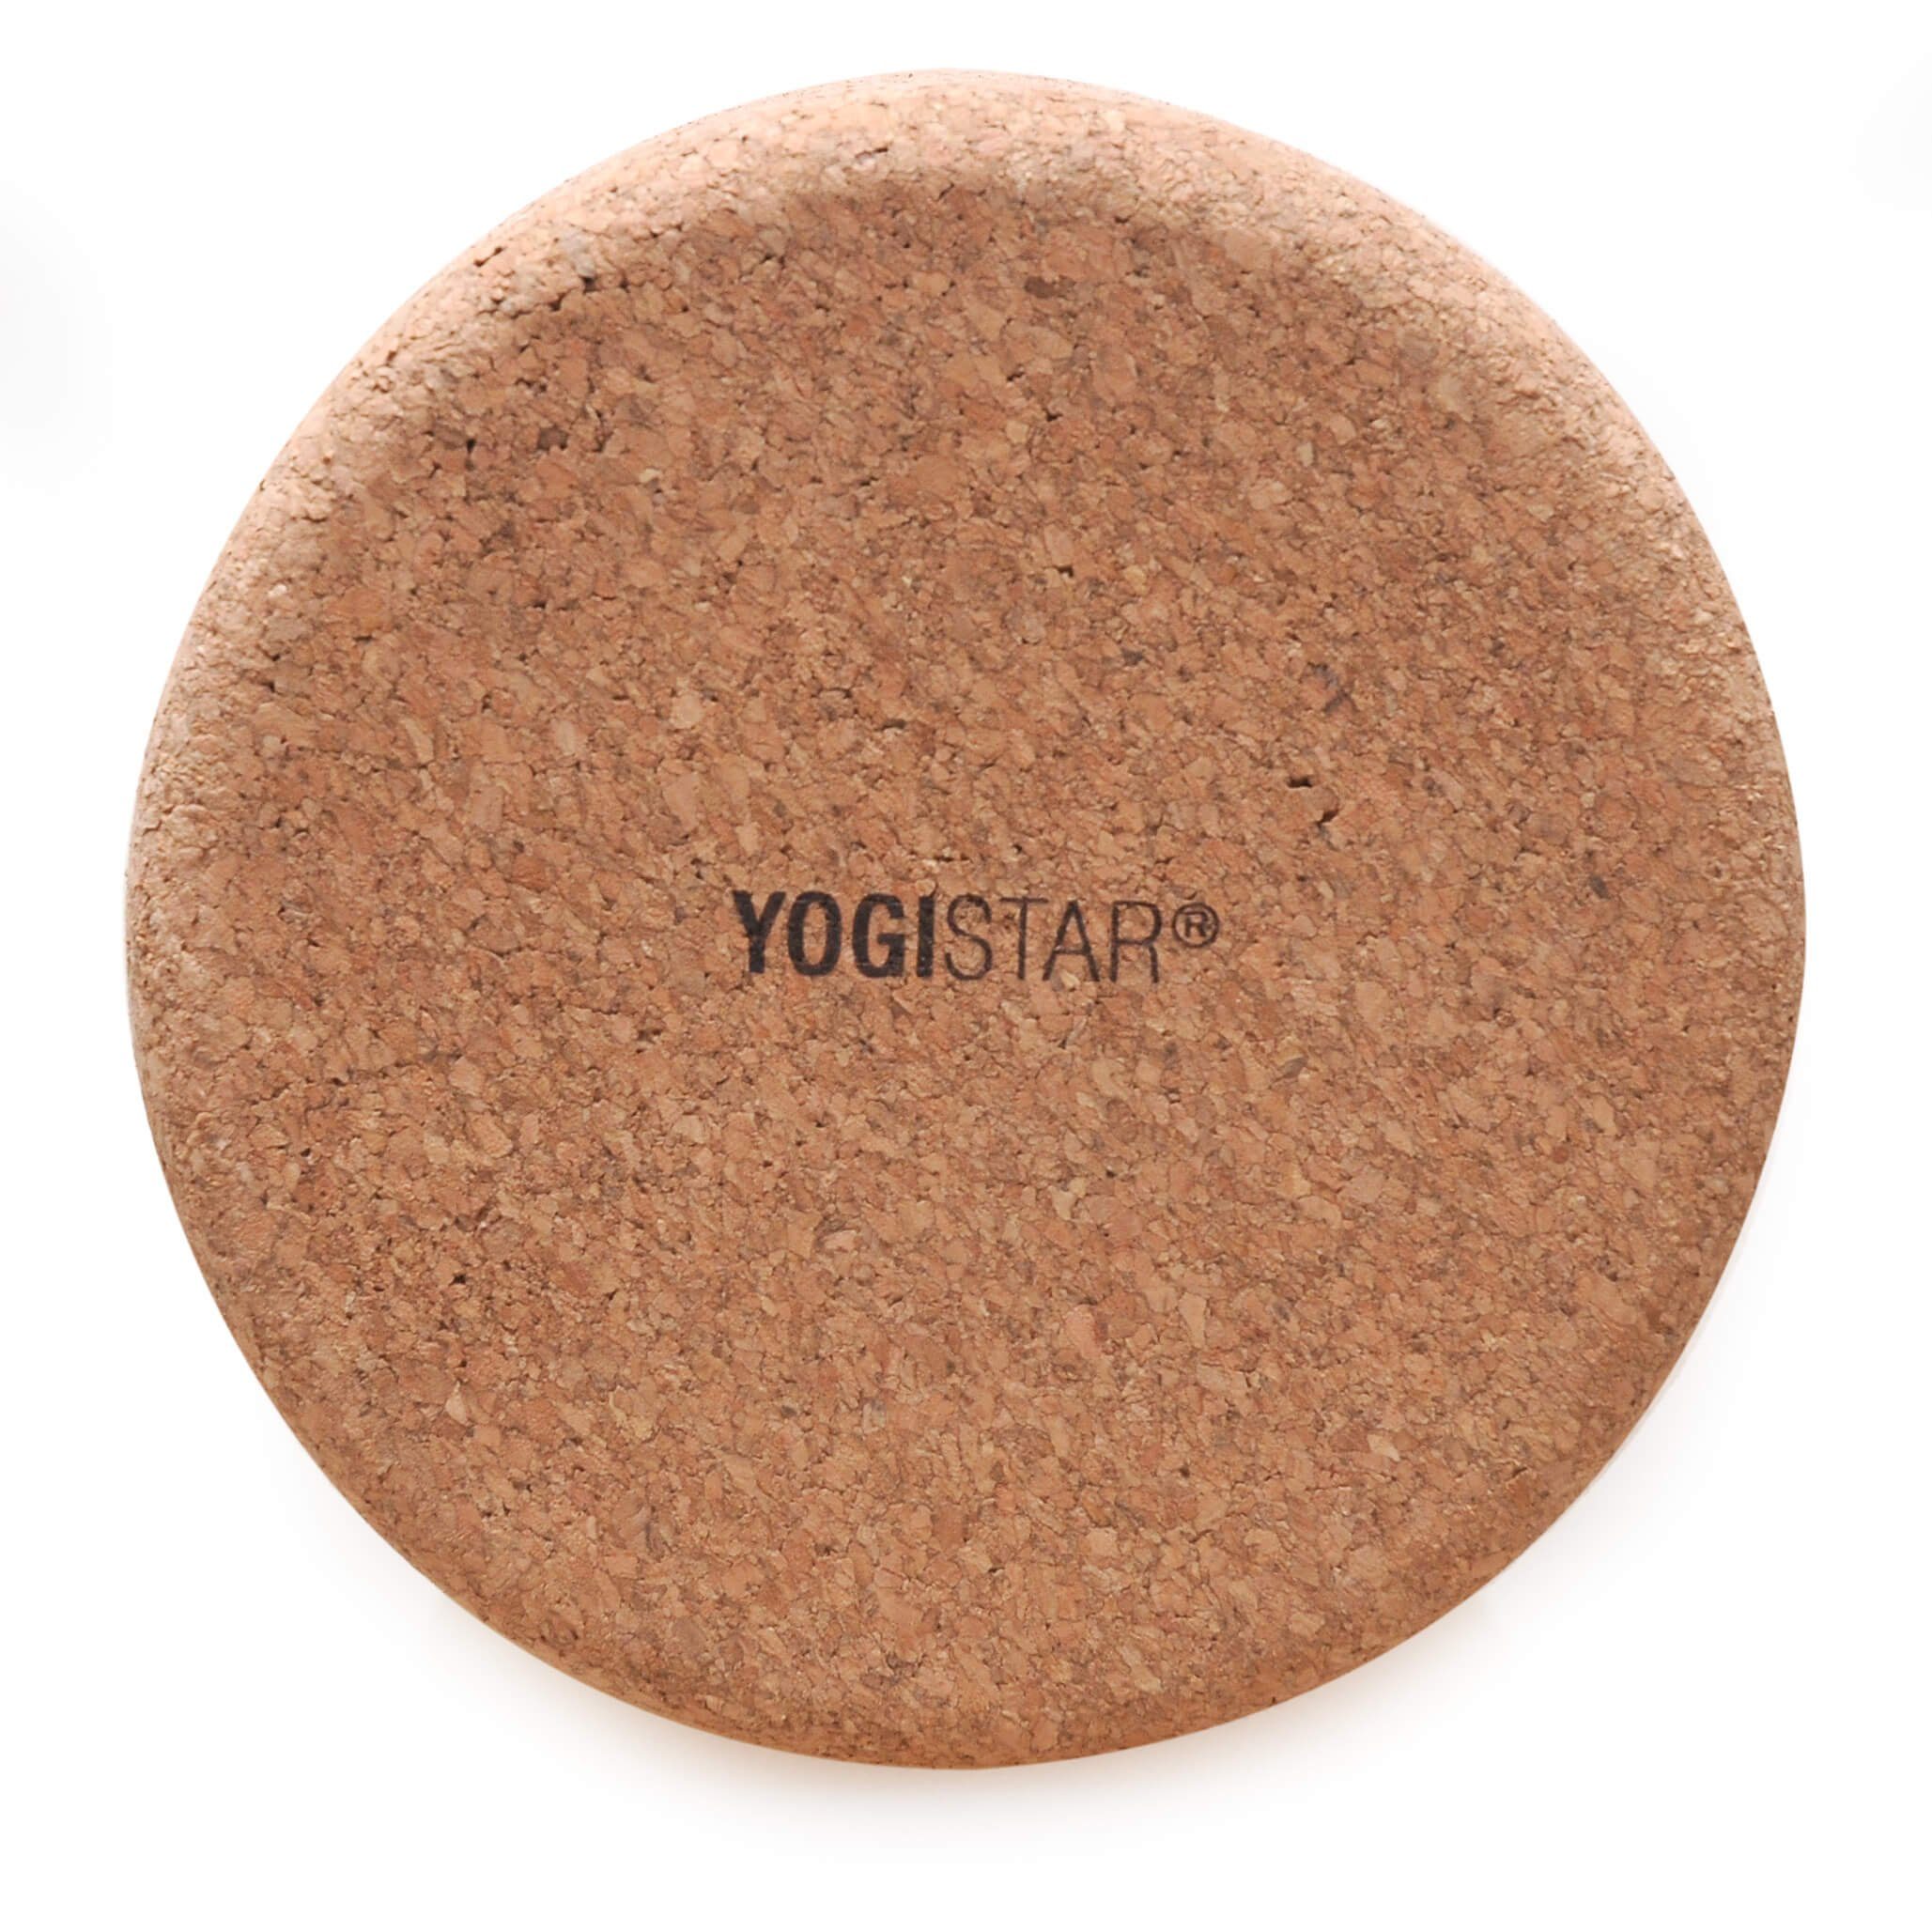 Standard), Cork Faszienrolle und Korkrolle für nachhaltig Basic Faszienmassage Yogistar die 1-tlg., angenehm! Pilatesrolle (Standard,